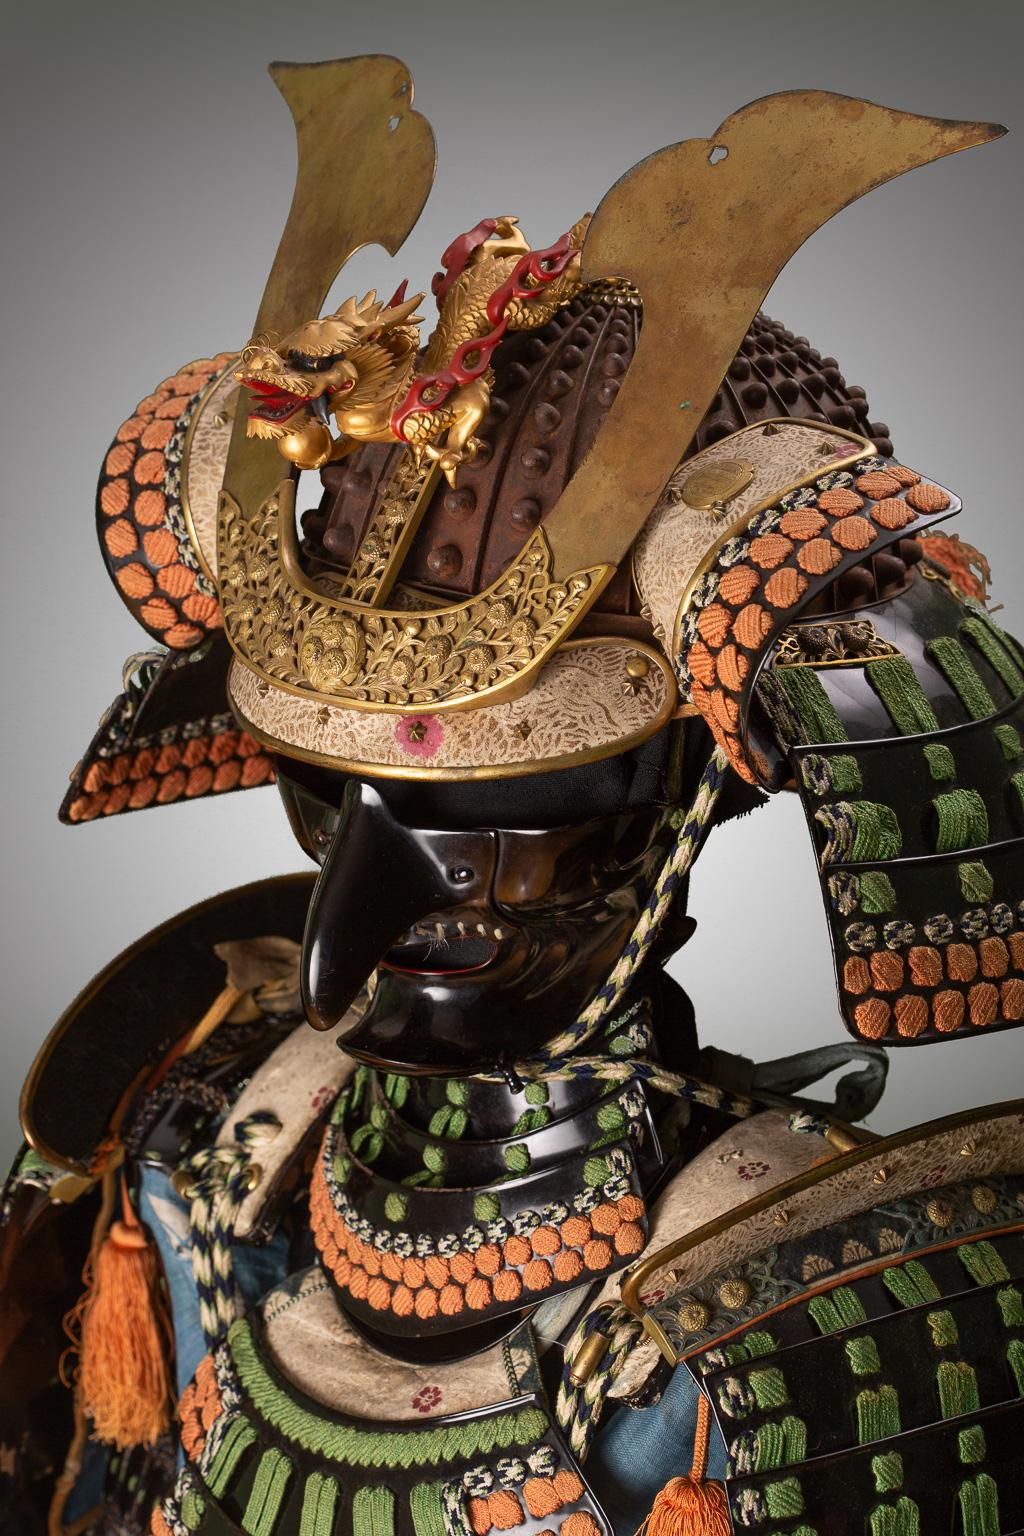 19th century samurai armor